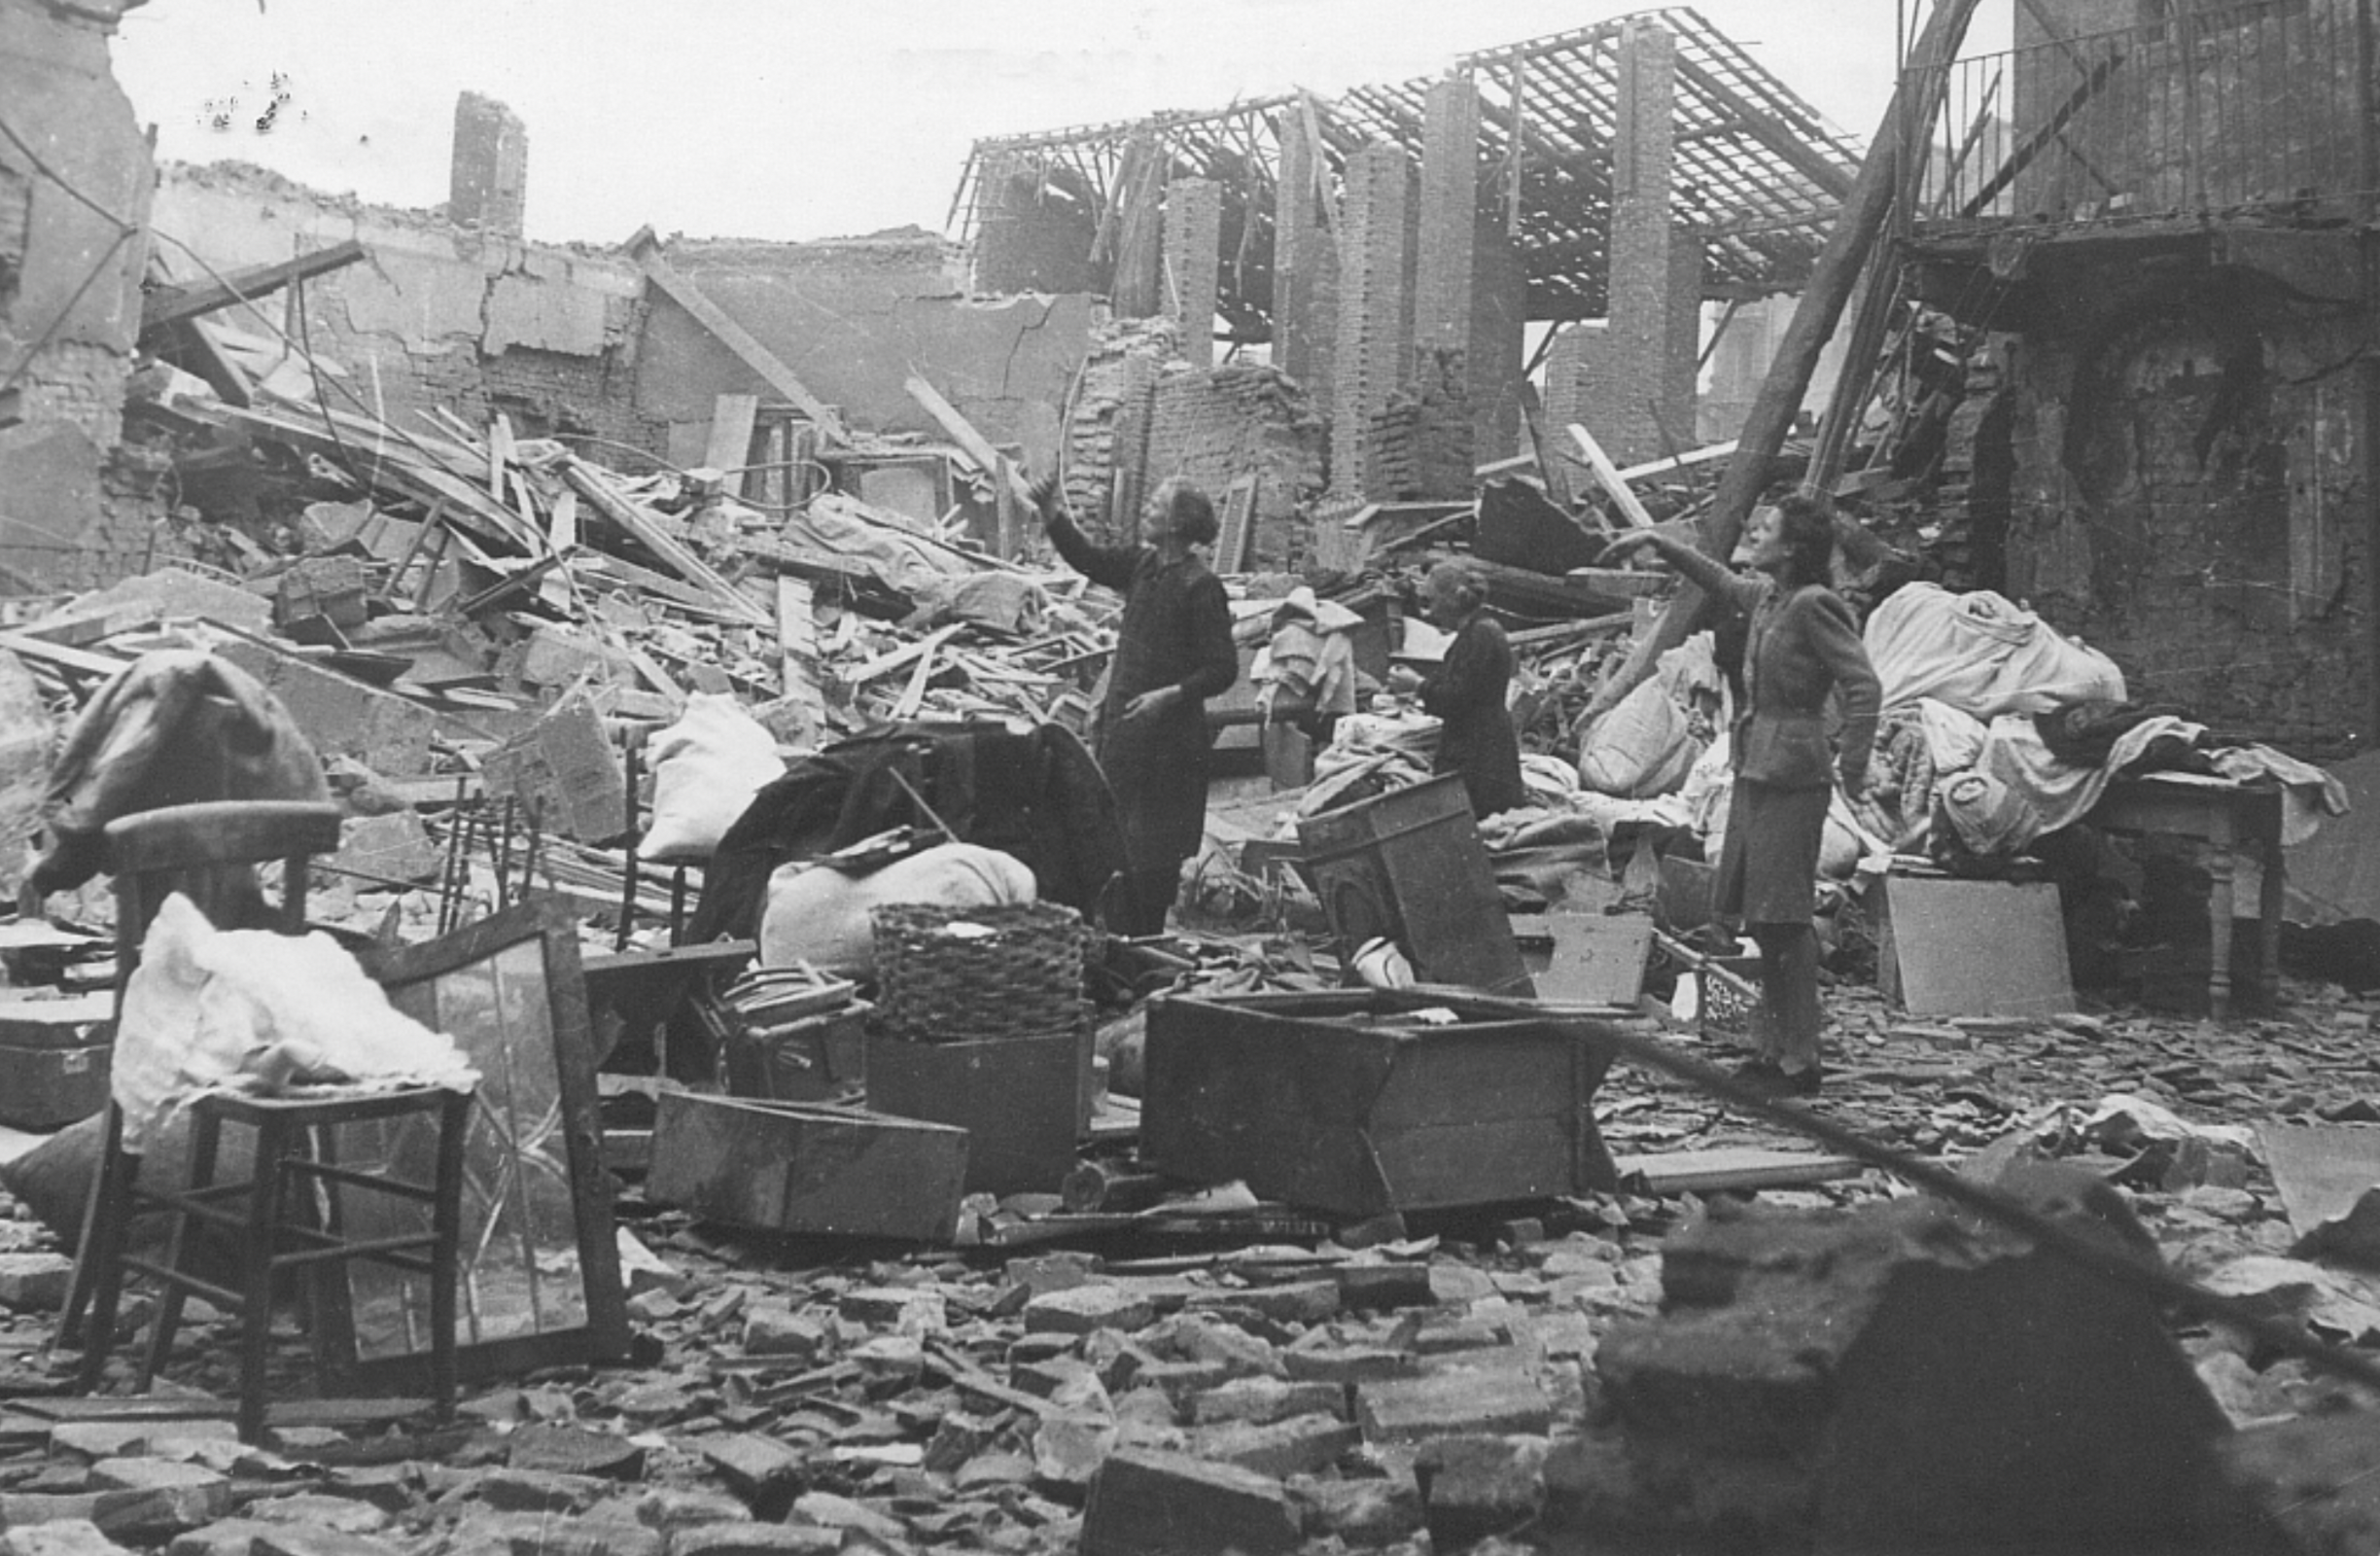 I bombardamenti su Milano tra storia e memoria